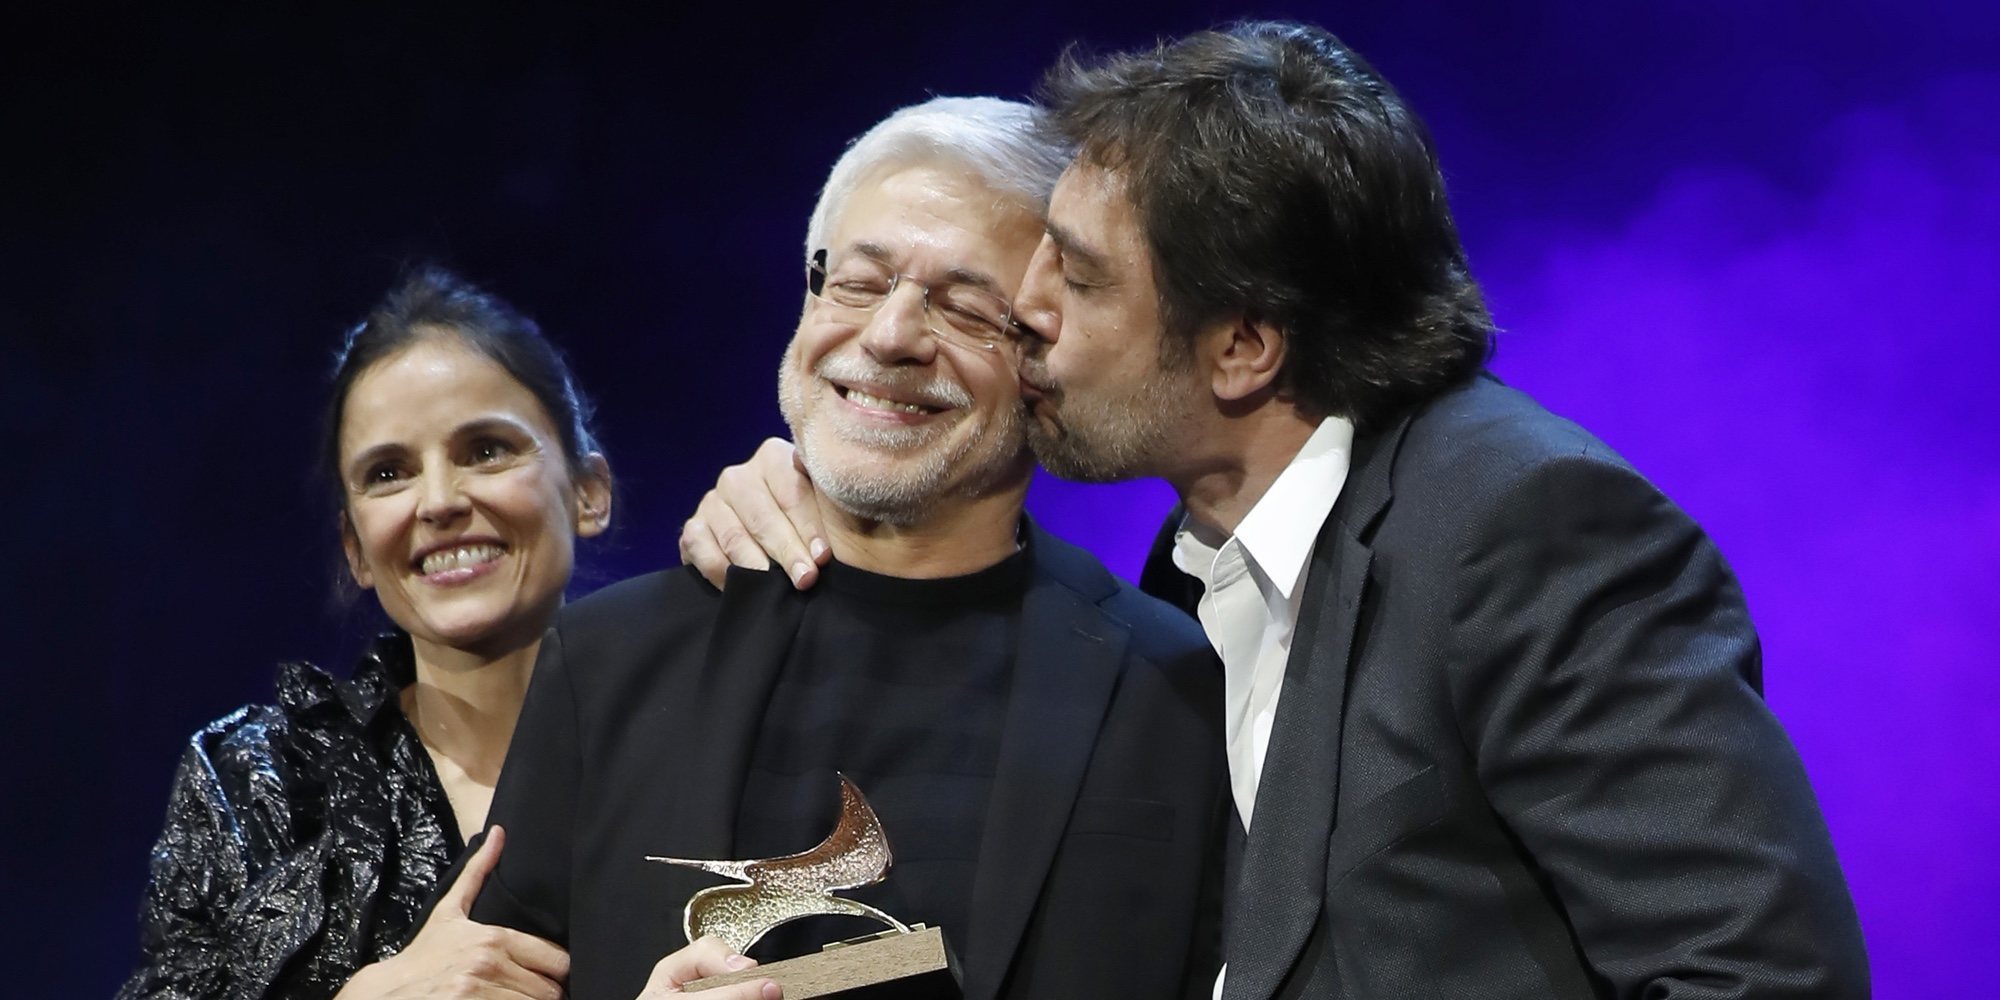 El gran homenaje de Javier Bardem a su maestro Juan Carlos Corazza: "Me ha enseñado a amar mi profesión"